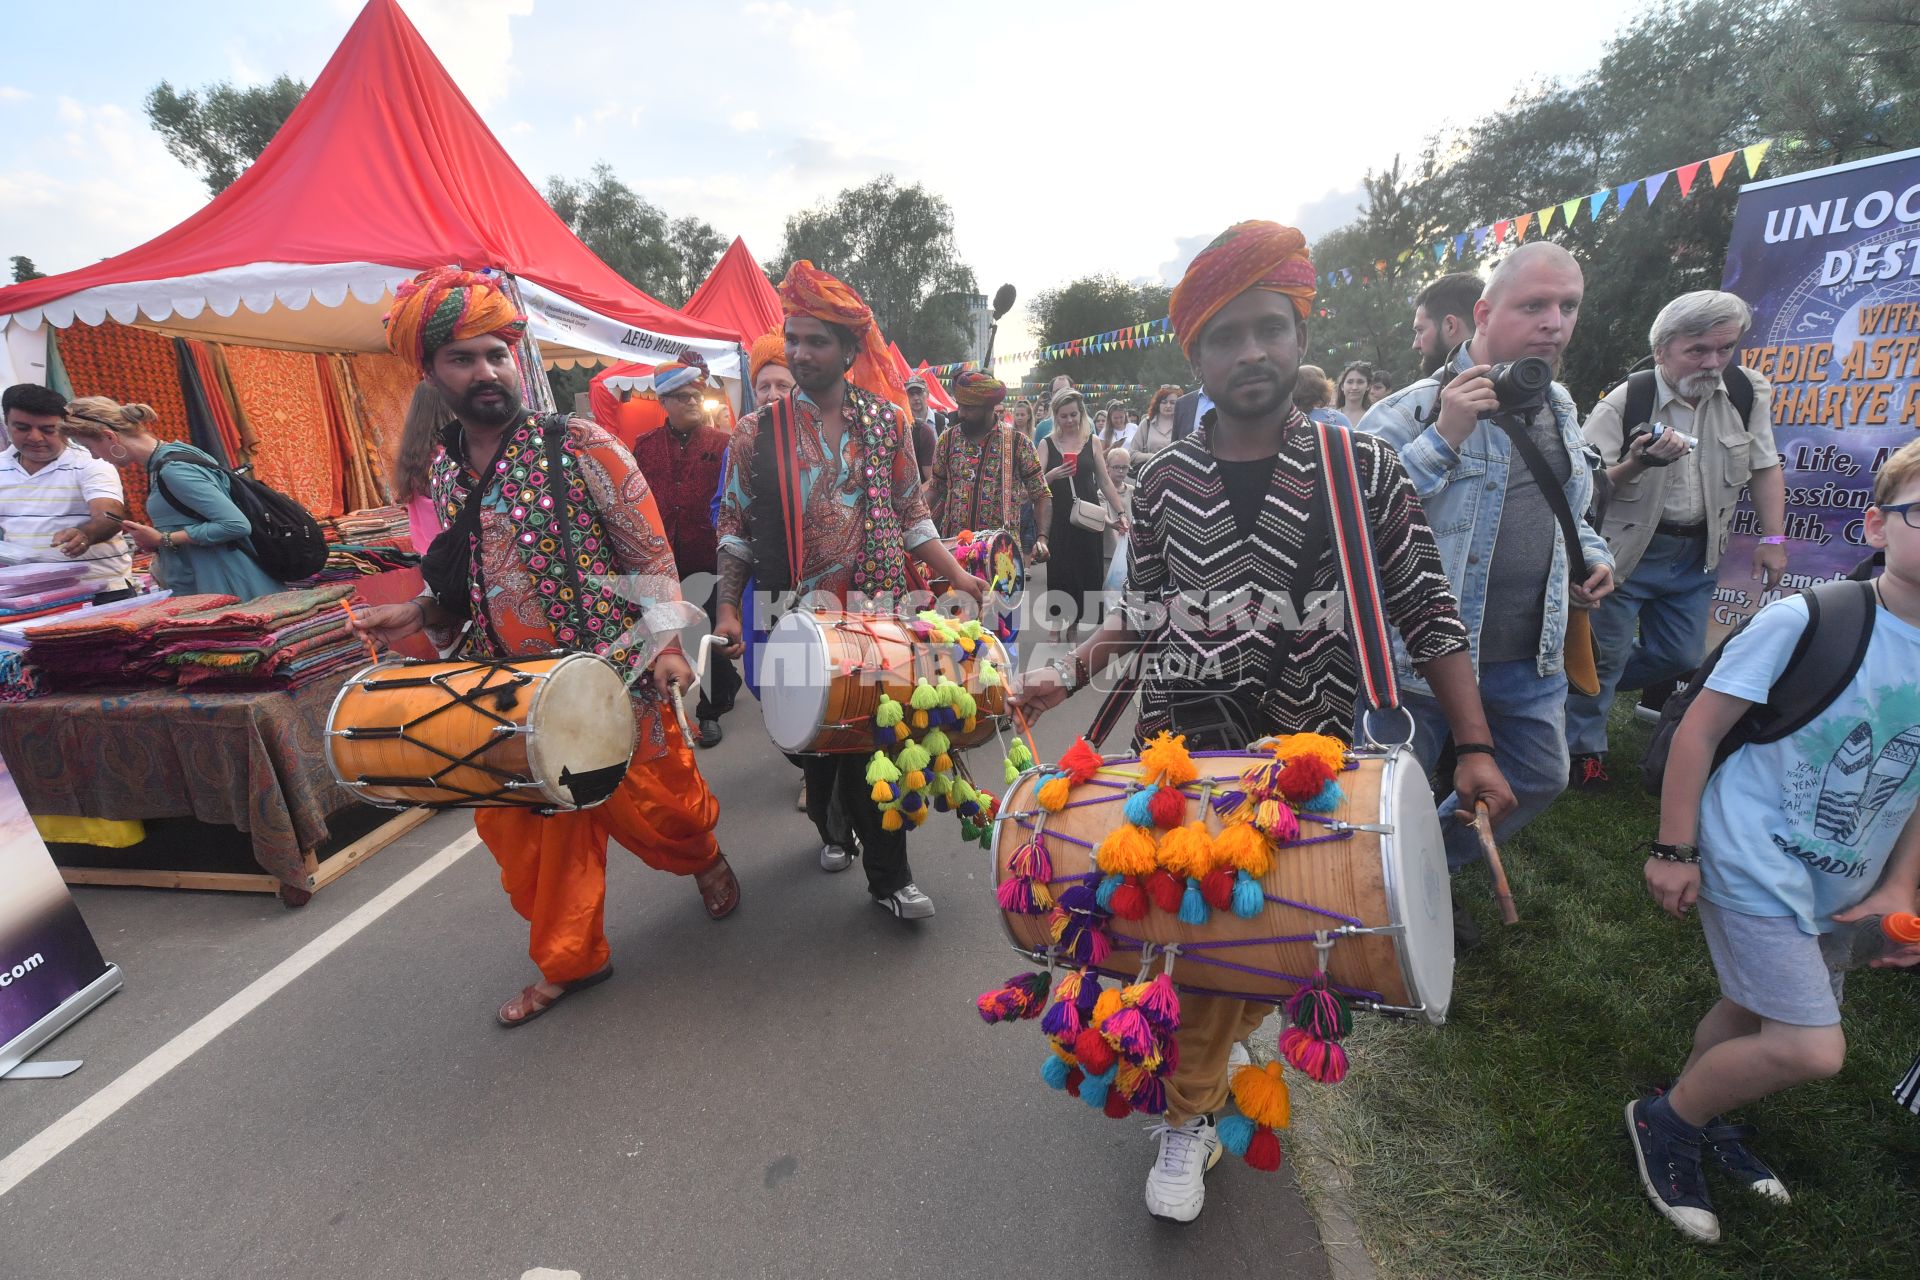 Этнический фестиваль `День Индии` в Москве